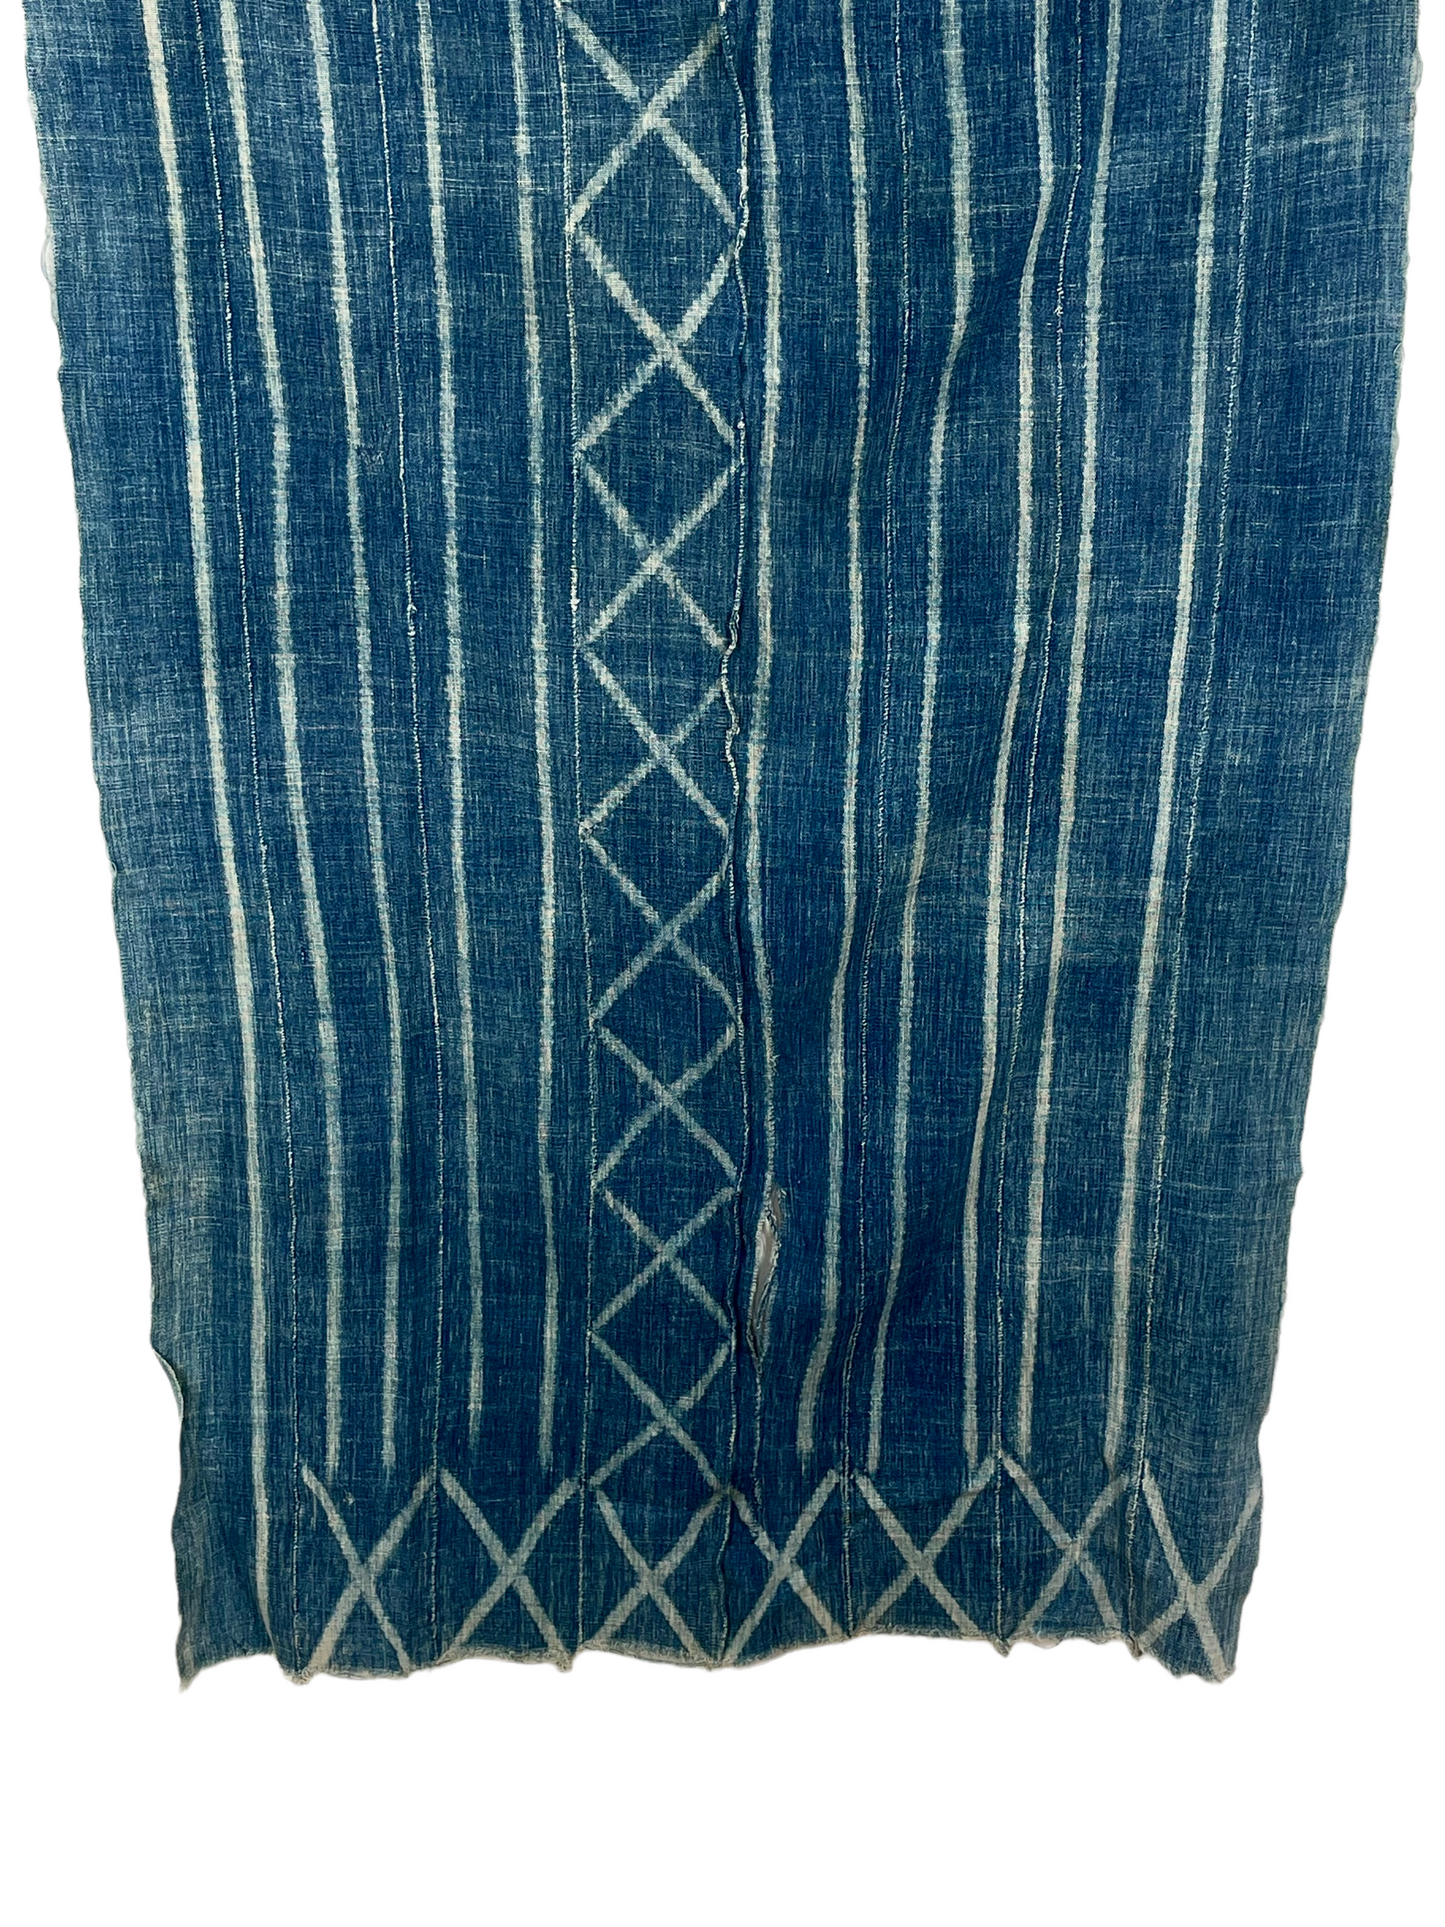 Indigo African Textile